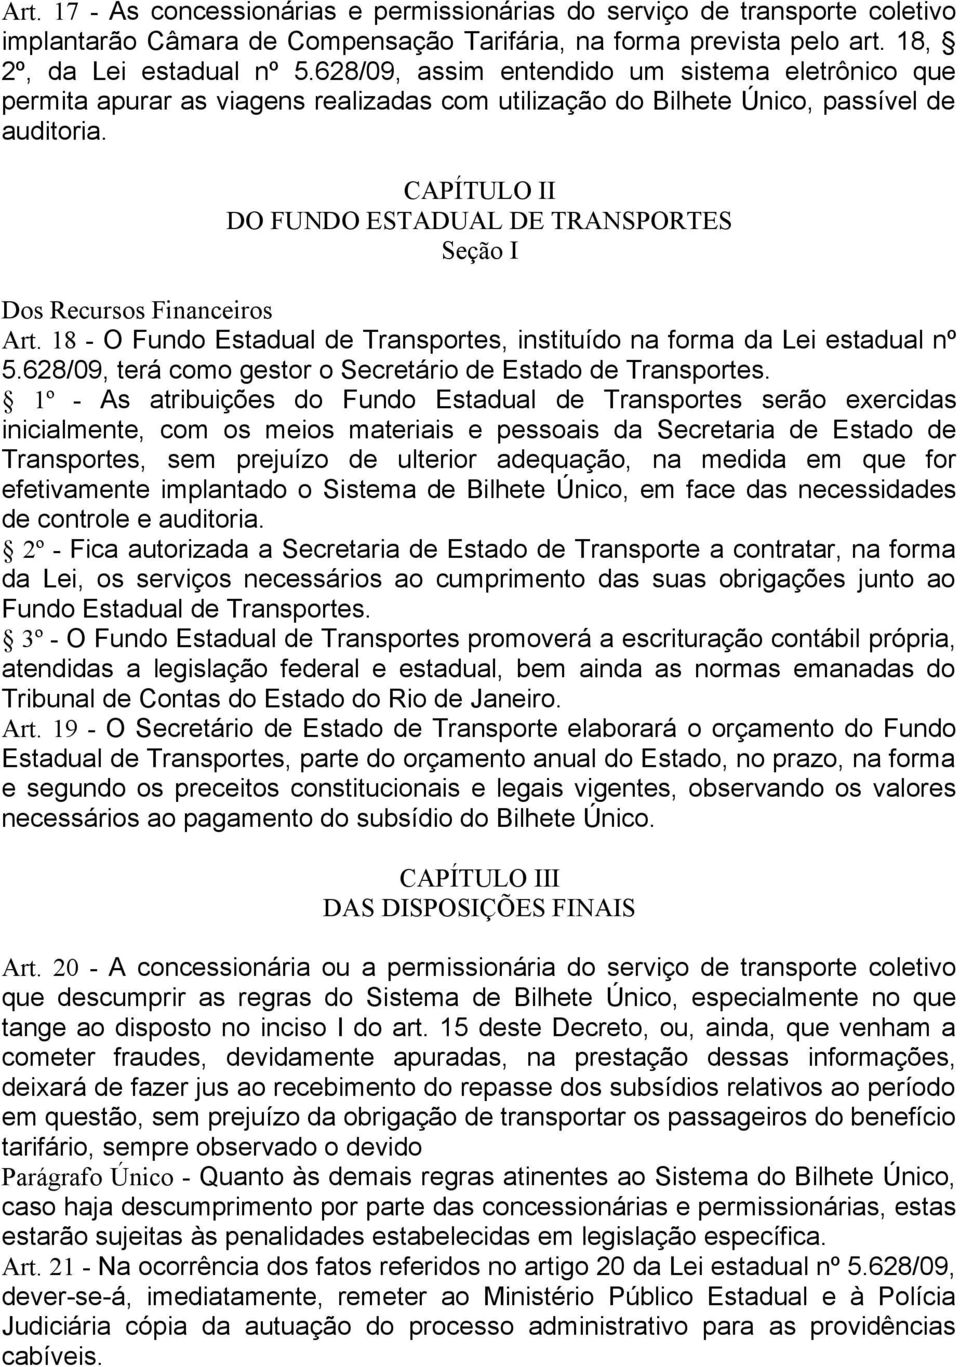 CAPÍTULO II DO FUNDO ESTADUAL DE TRANSPORTES Seção I Dos Recursos Financeiros Art. 18 - O Fundo Estadual de Transportes, instituído na forma da Lei estadual nº 5.